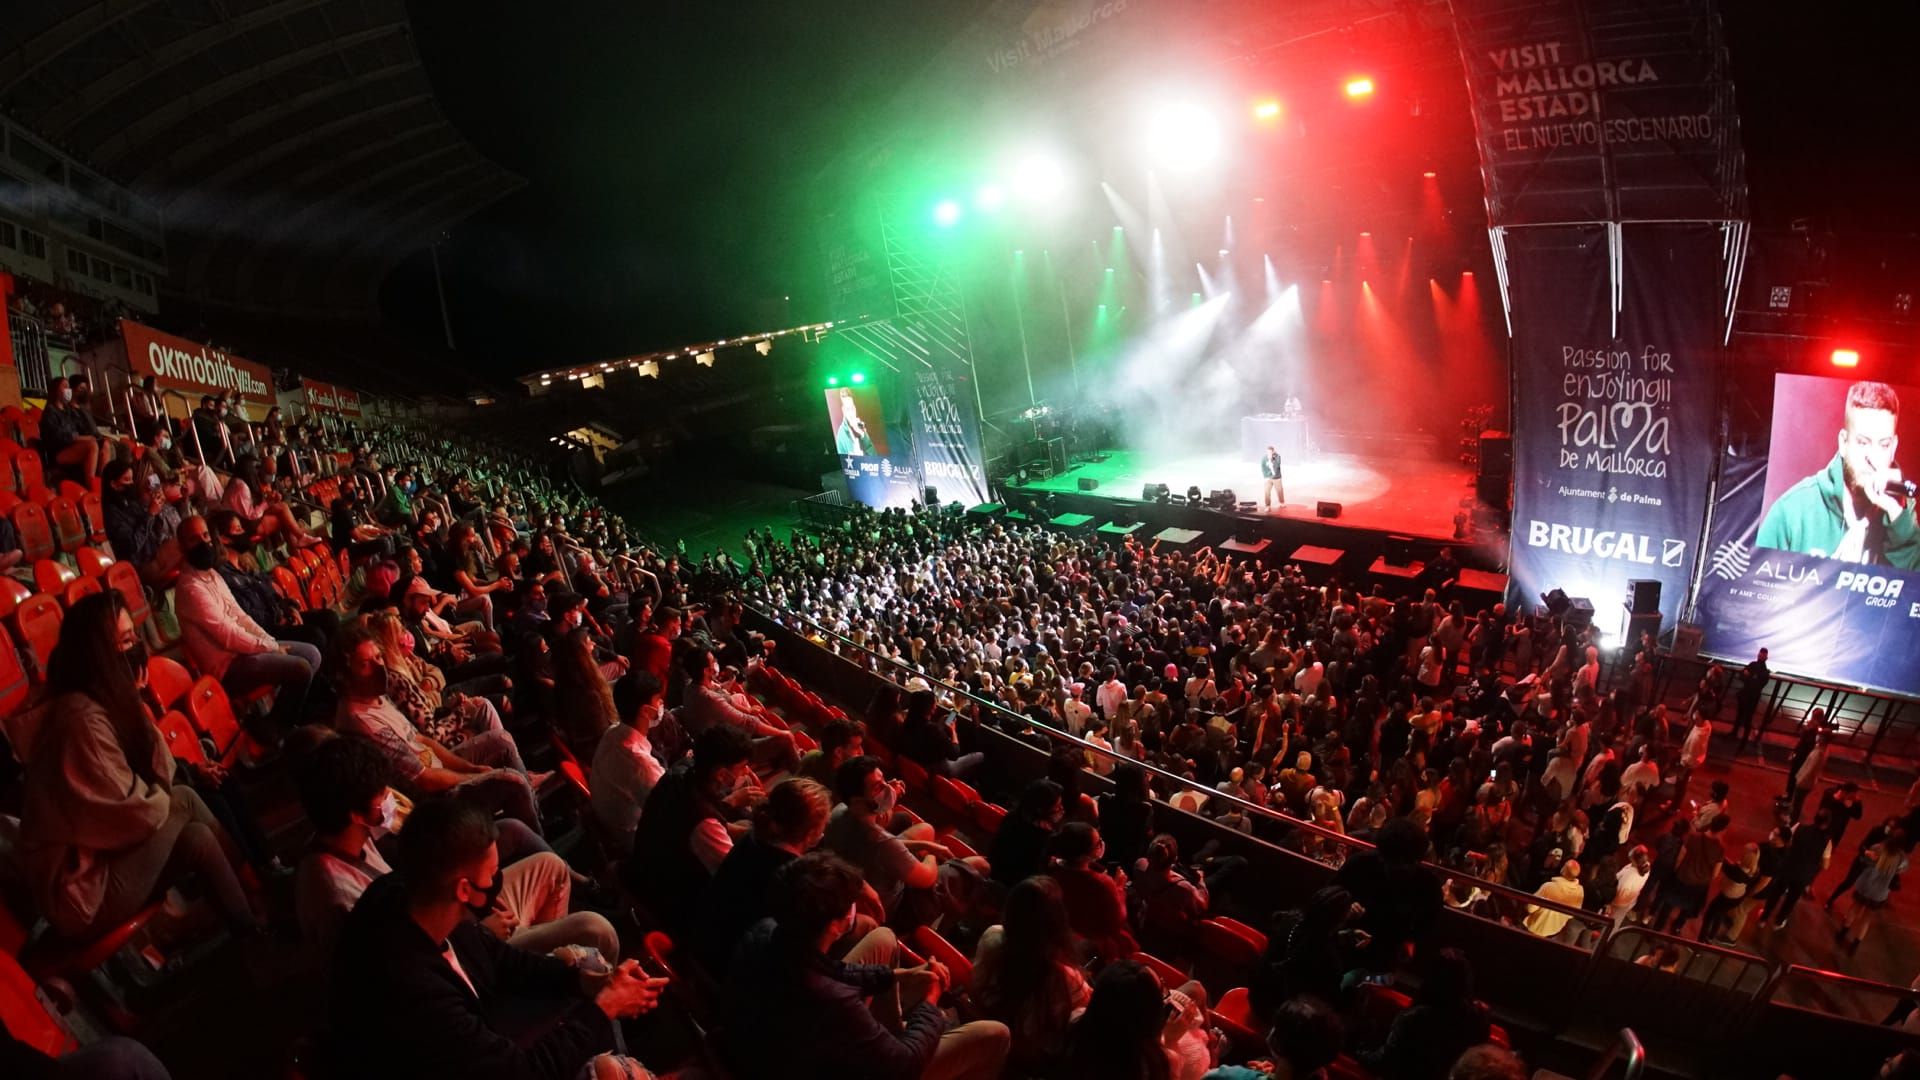 Große Bühne - Tausende Konzertbesucher im Stadion von Palma de Mallorca